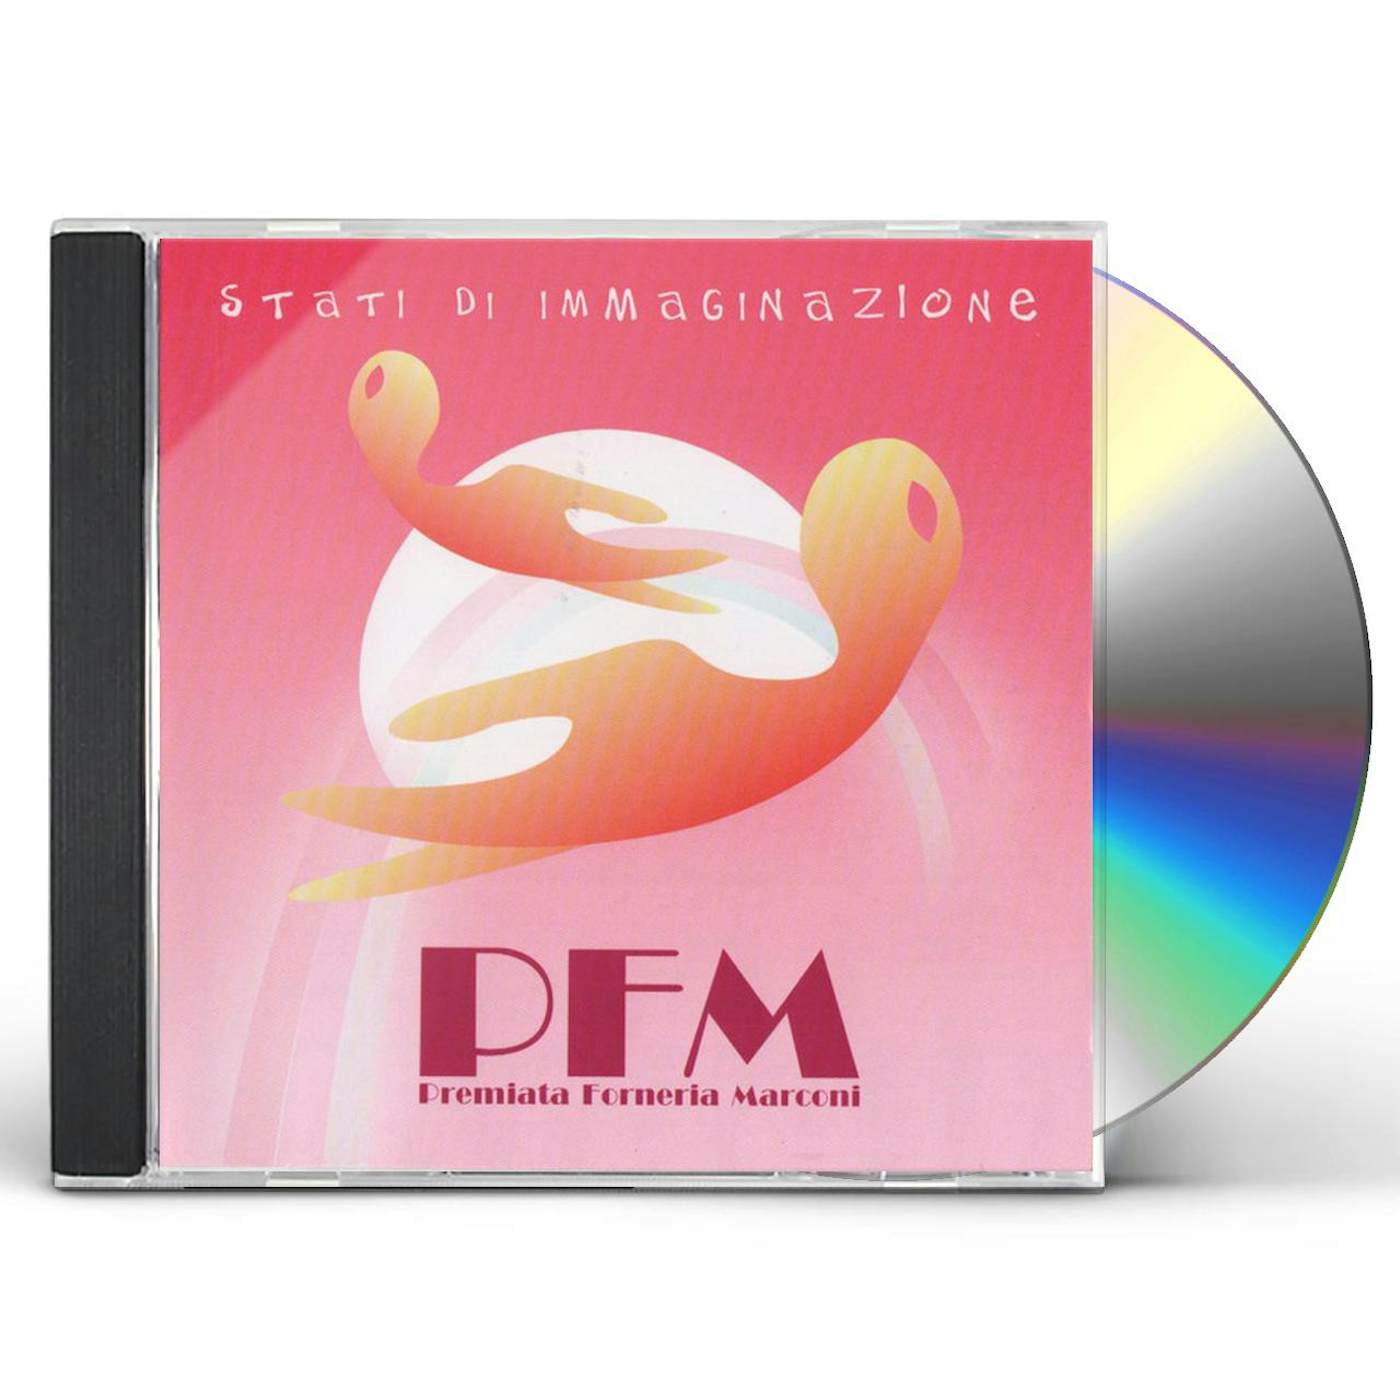 PFM STATI DI IMMAGINAZIONE CD